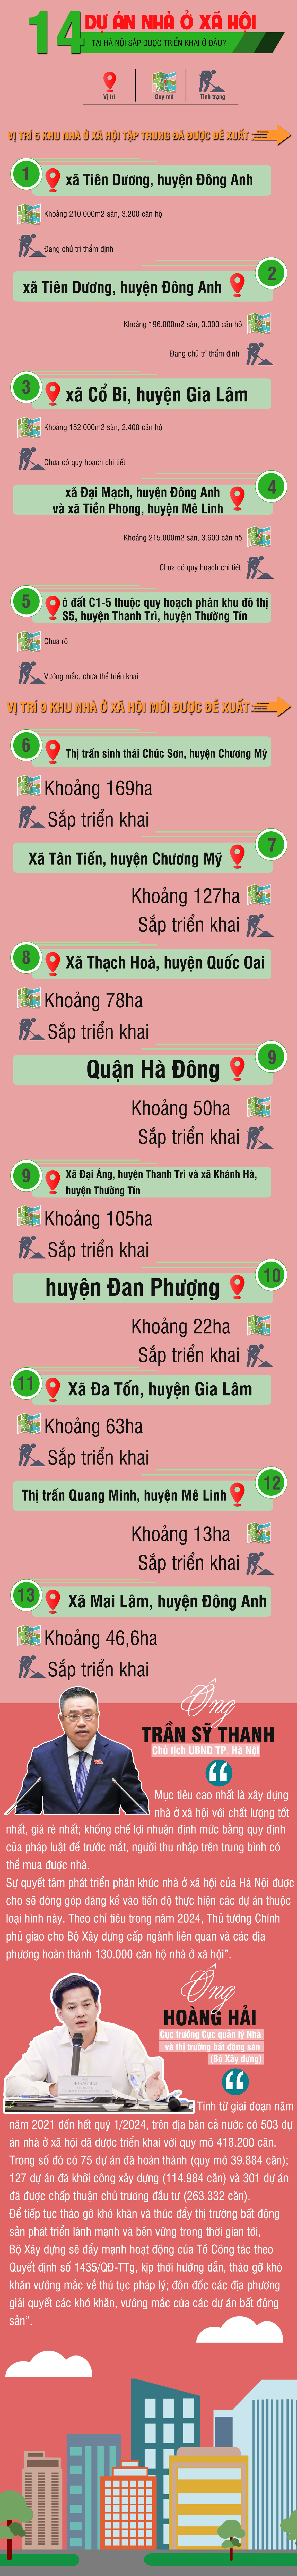 [Infographic] 14 dự án Nhà ở xã hội tại Hà Nội sắp được triển khai ở đâu? - Ảnh 1